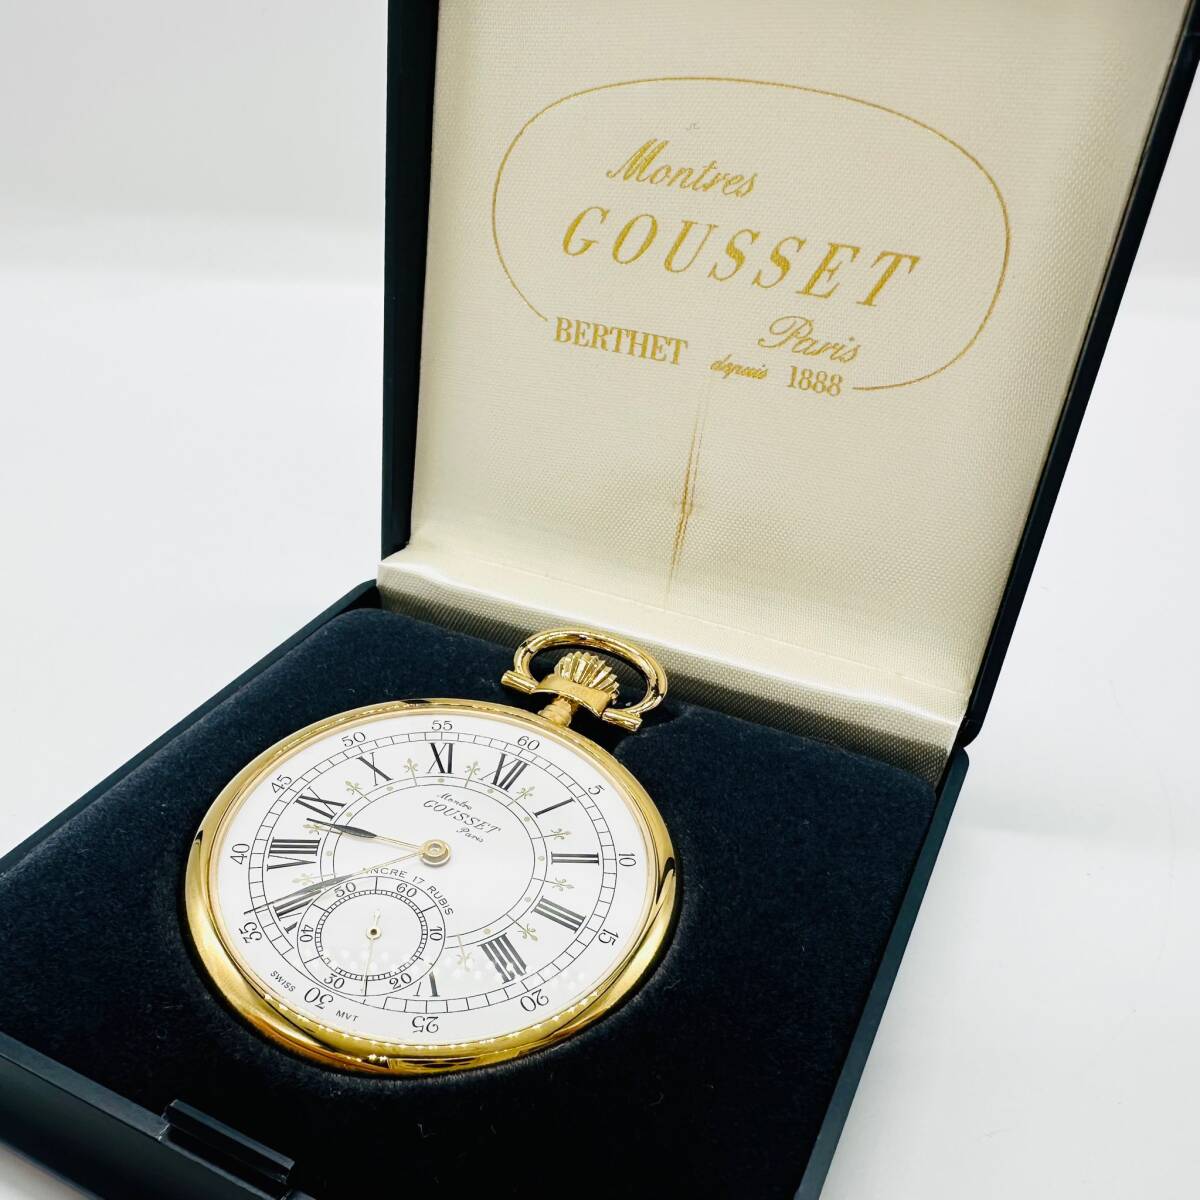 Montre GOUSSET Parisg Z механический завод часы карманные часы работа товар smoseko с коробкой симпатичный Швейцария 1 иен лот коллекция аксессуары 3865